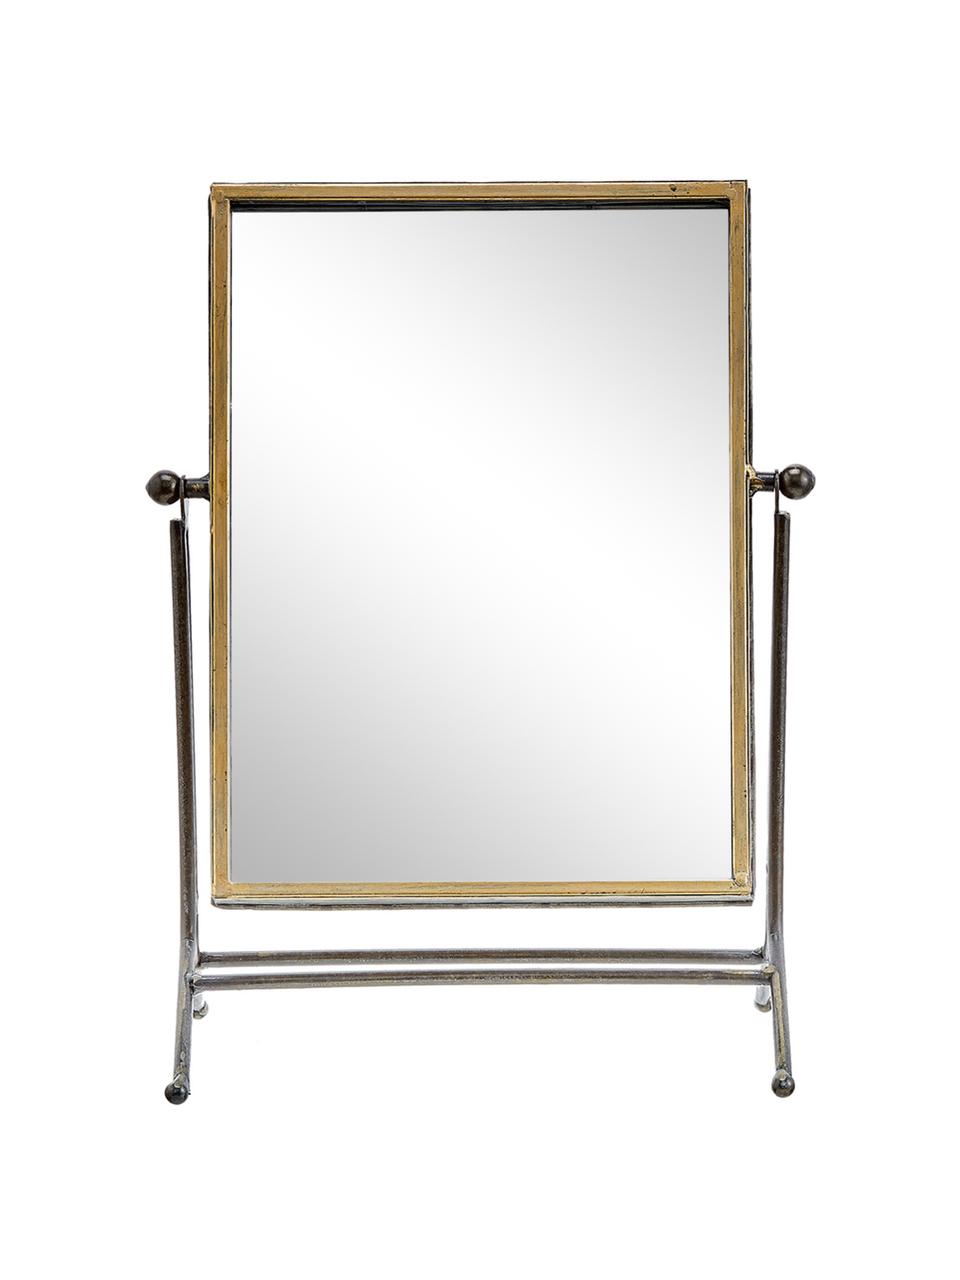 Kosmetikspiegel Antique, Rahmen: Metall, beschichtet, Spiegelfläche: Spiegelglas, Messingfarben, 33 x 44 cm